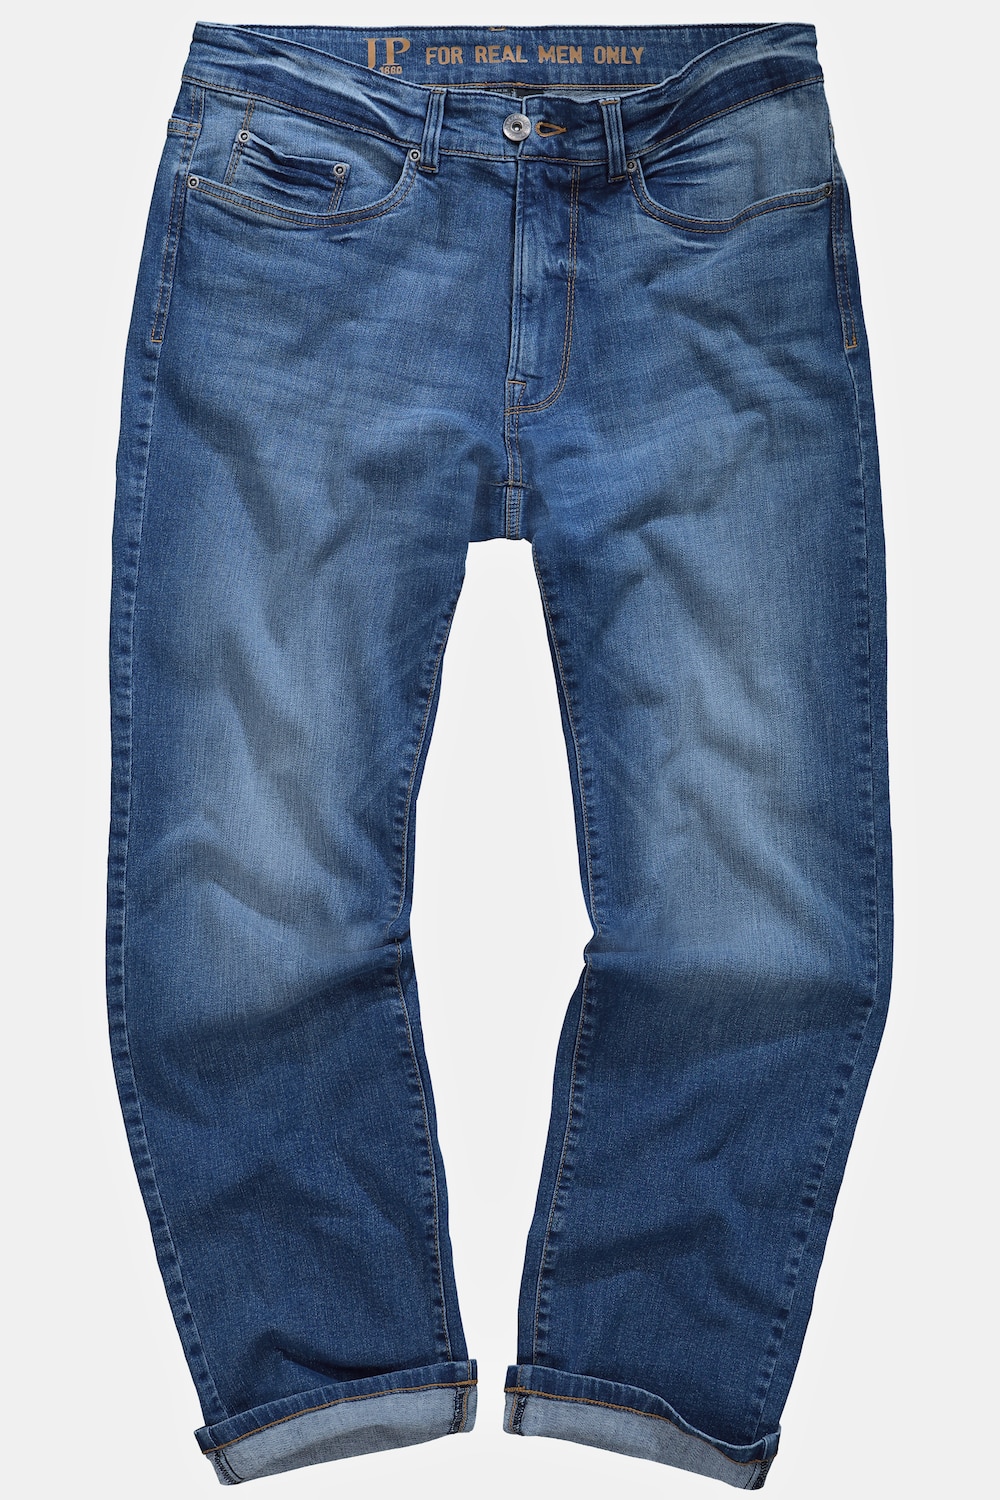 Grote Maten jeans, Heren, blauw, Maat: 58, Katoen, JP1880